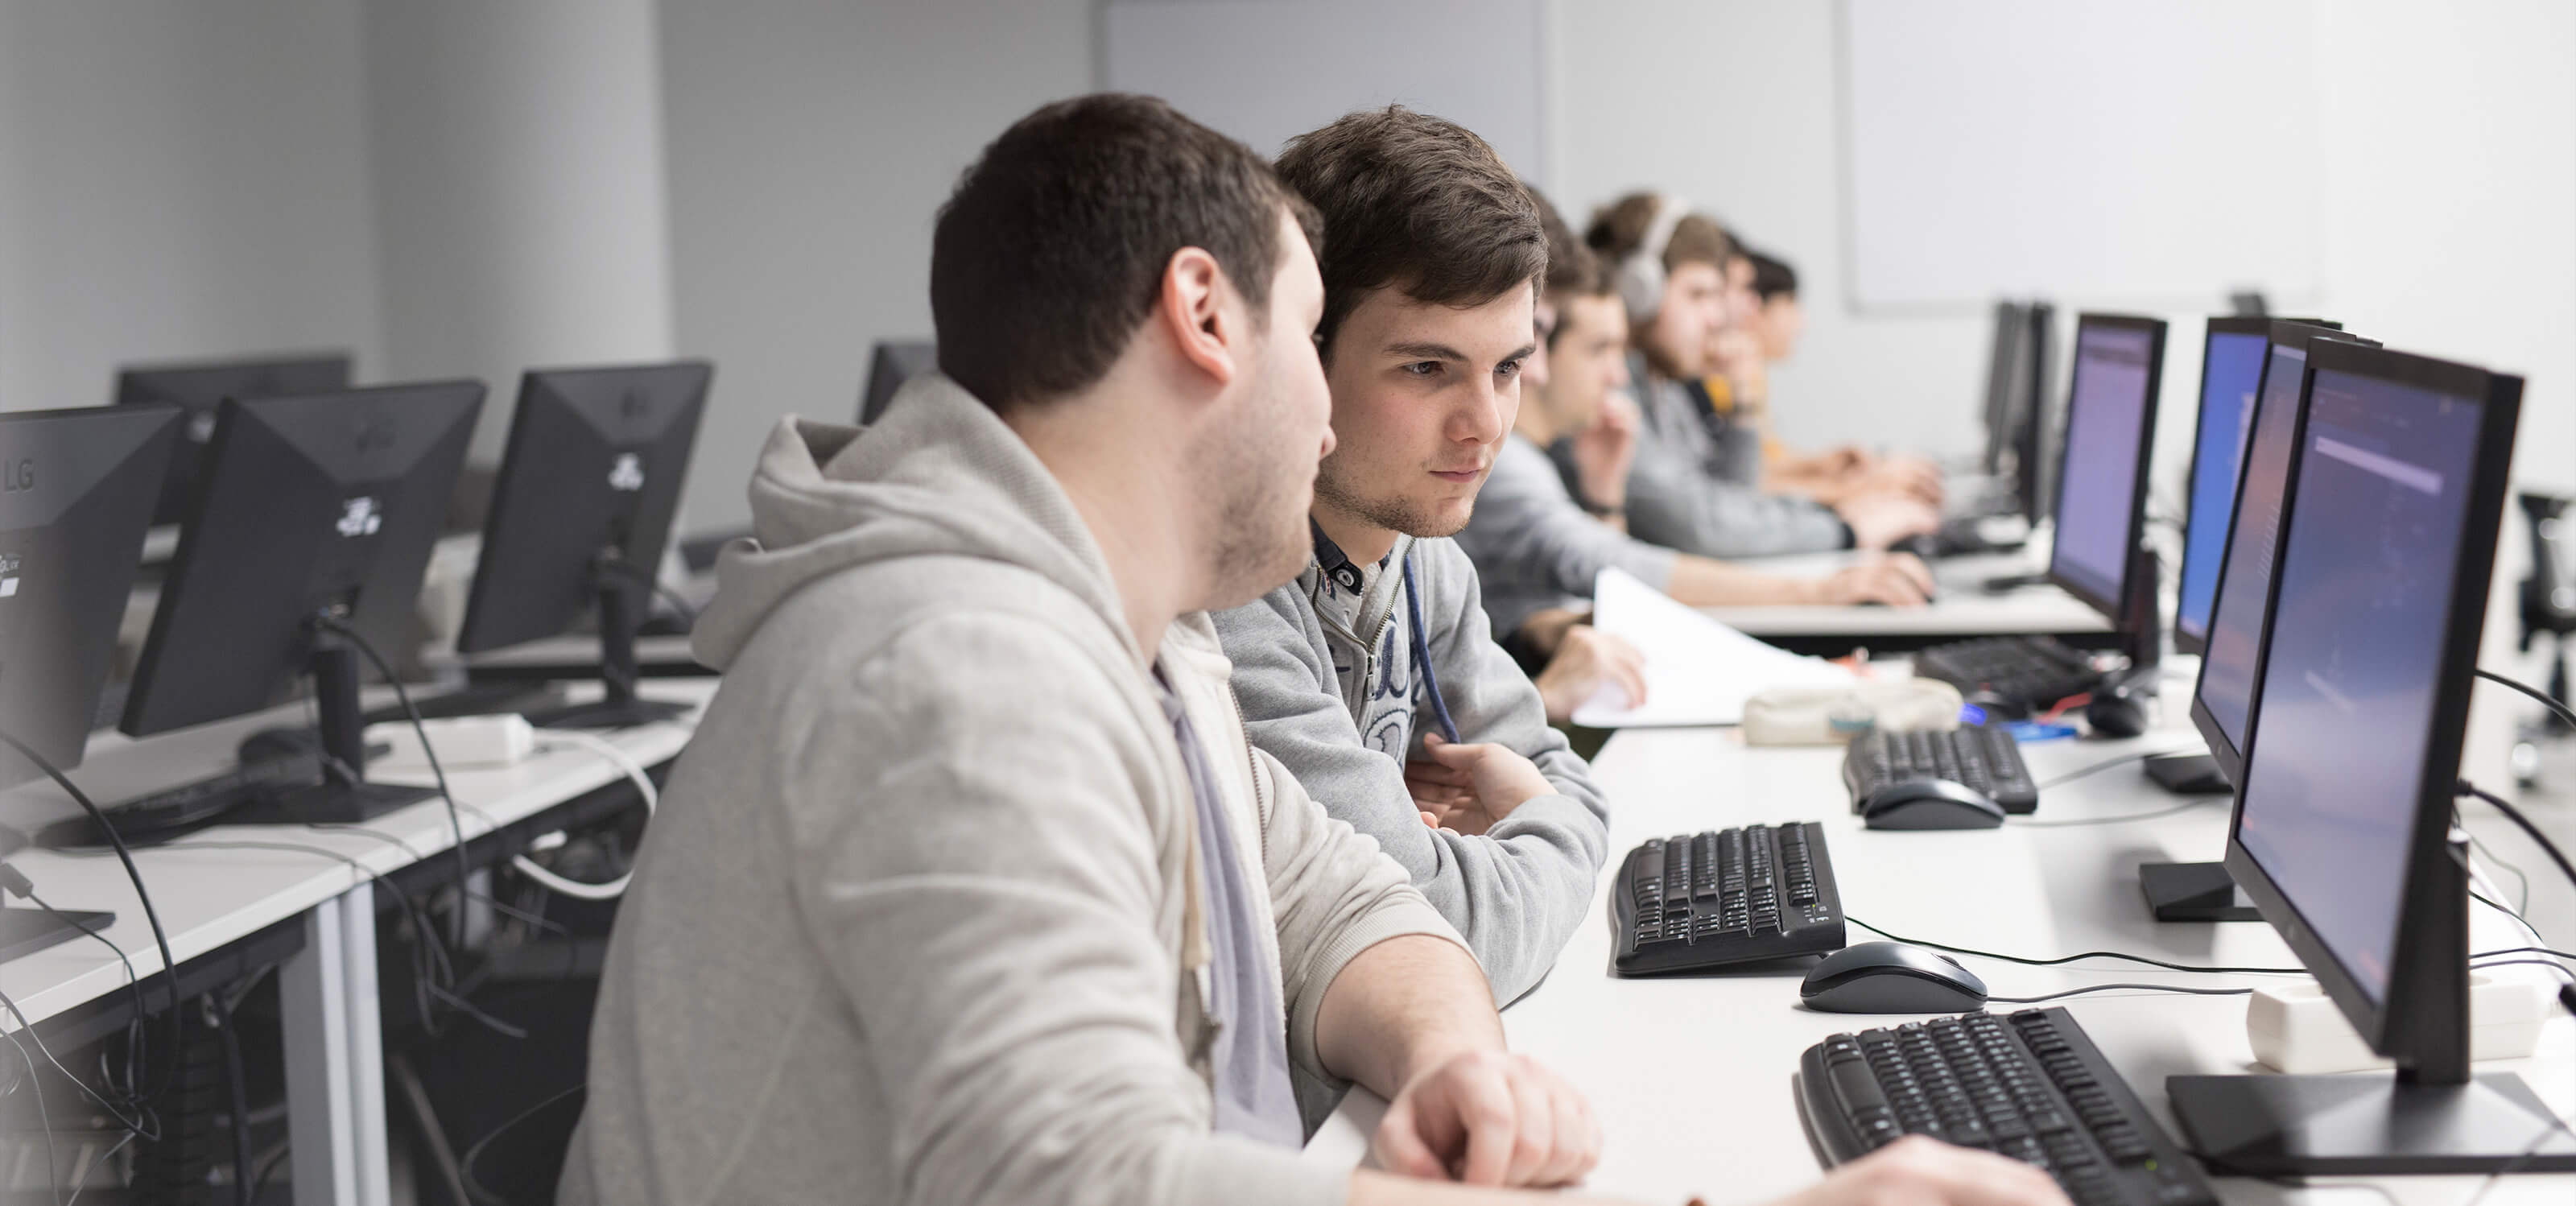 Dos estudiantes trabajan juntos mientras están sentados en una mesa llena de ordenadores con otros compañeros de clase.